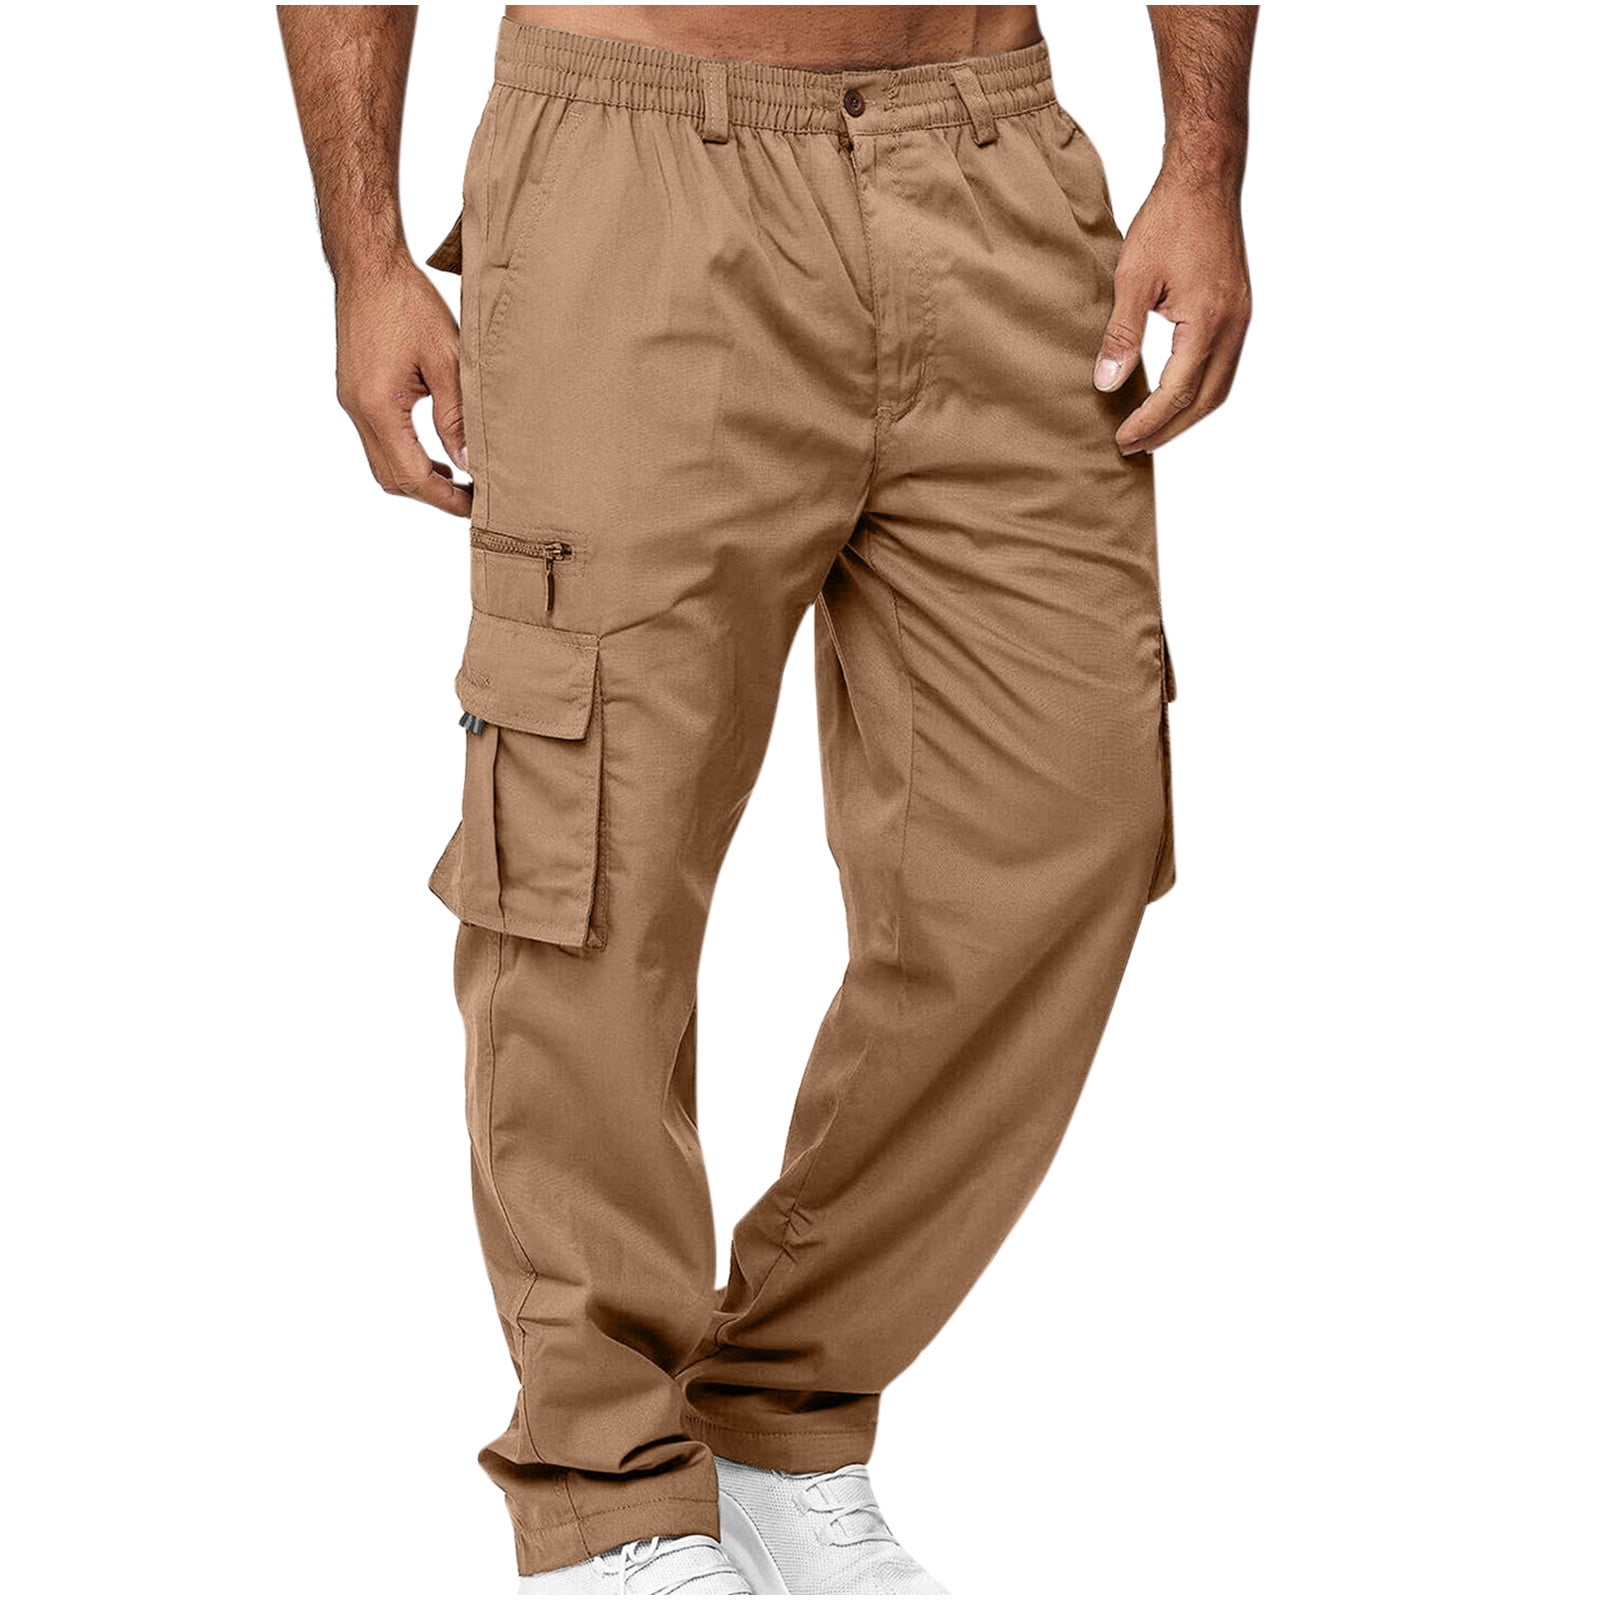 Pants Kombat men's comuflated khaki ripstop pants for men sports